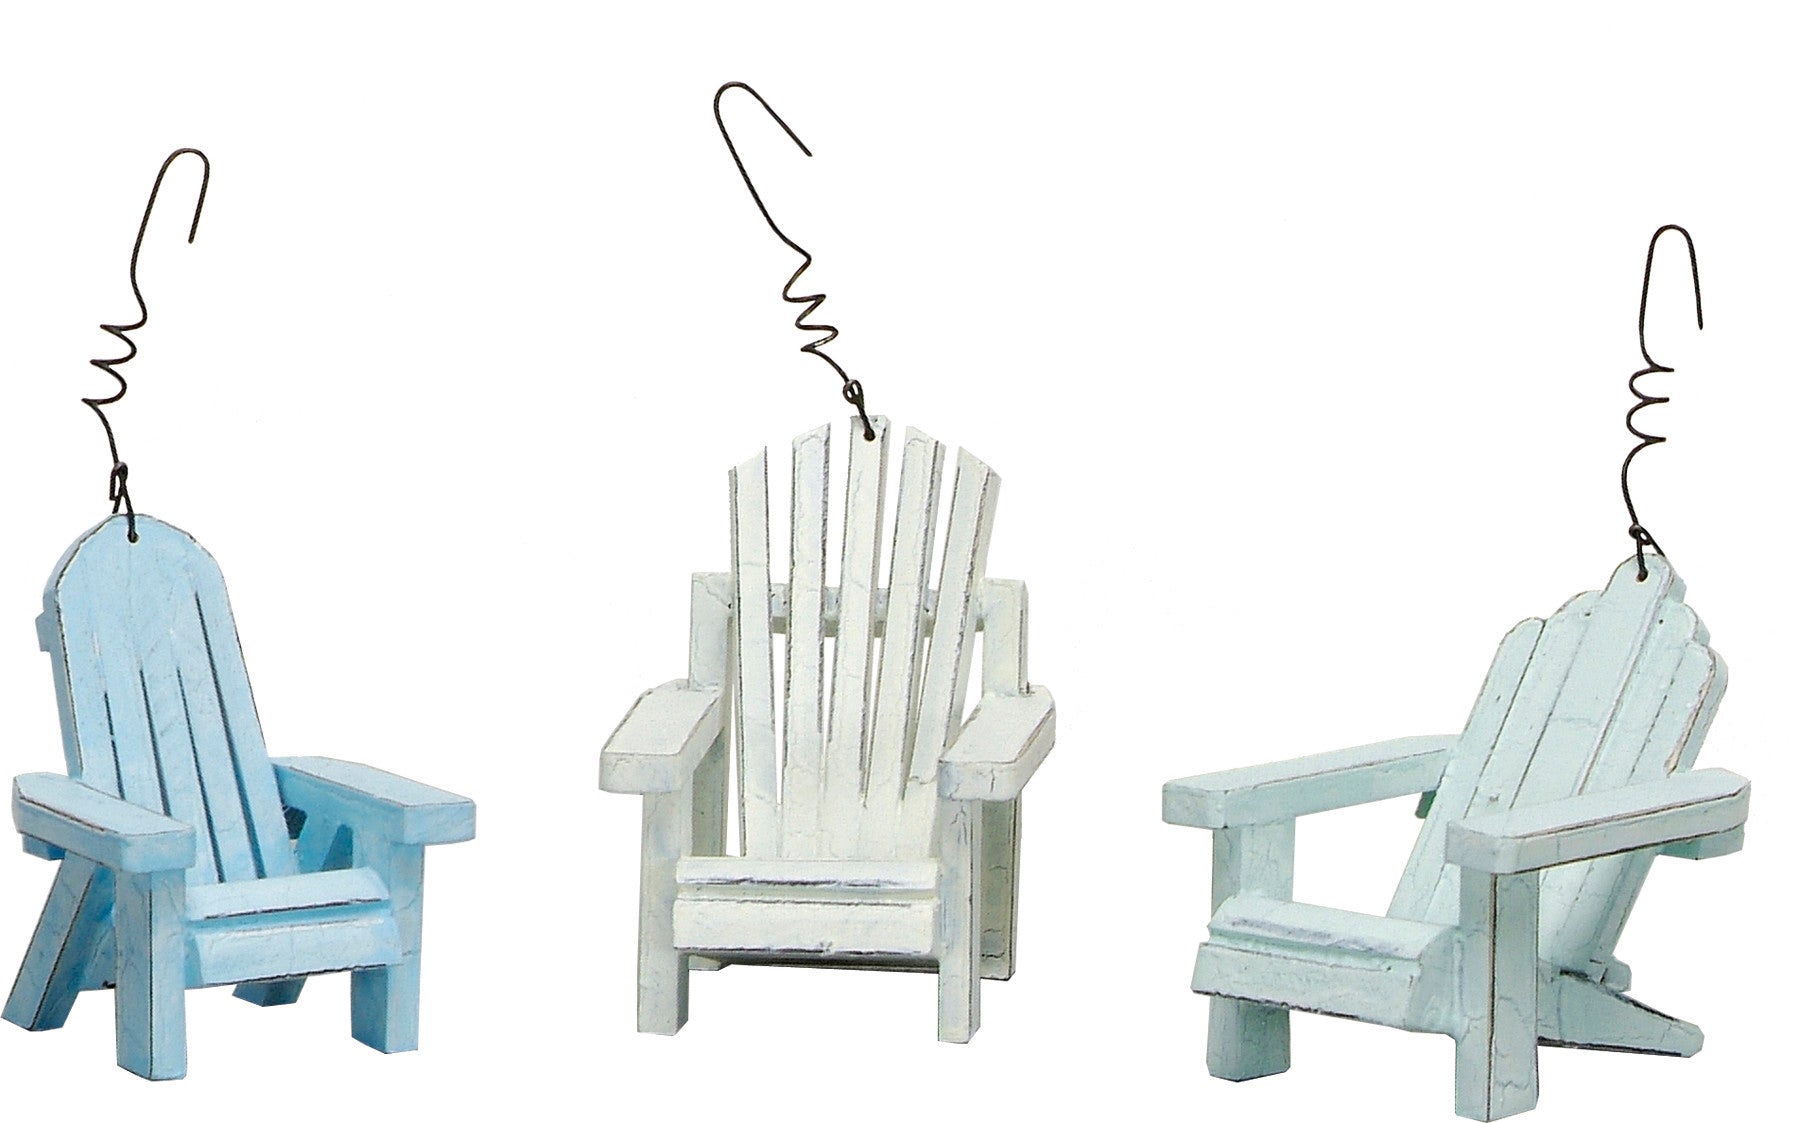 Ornament Set - Beach Chairs